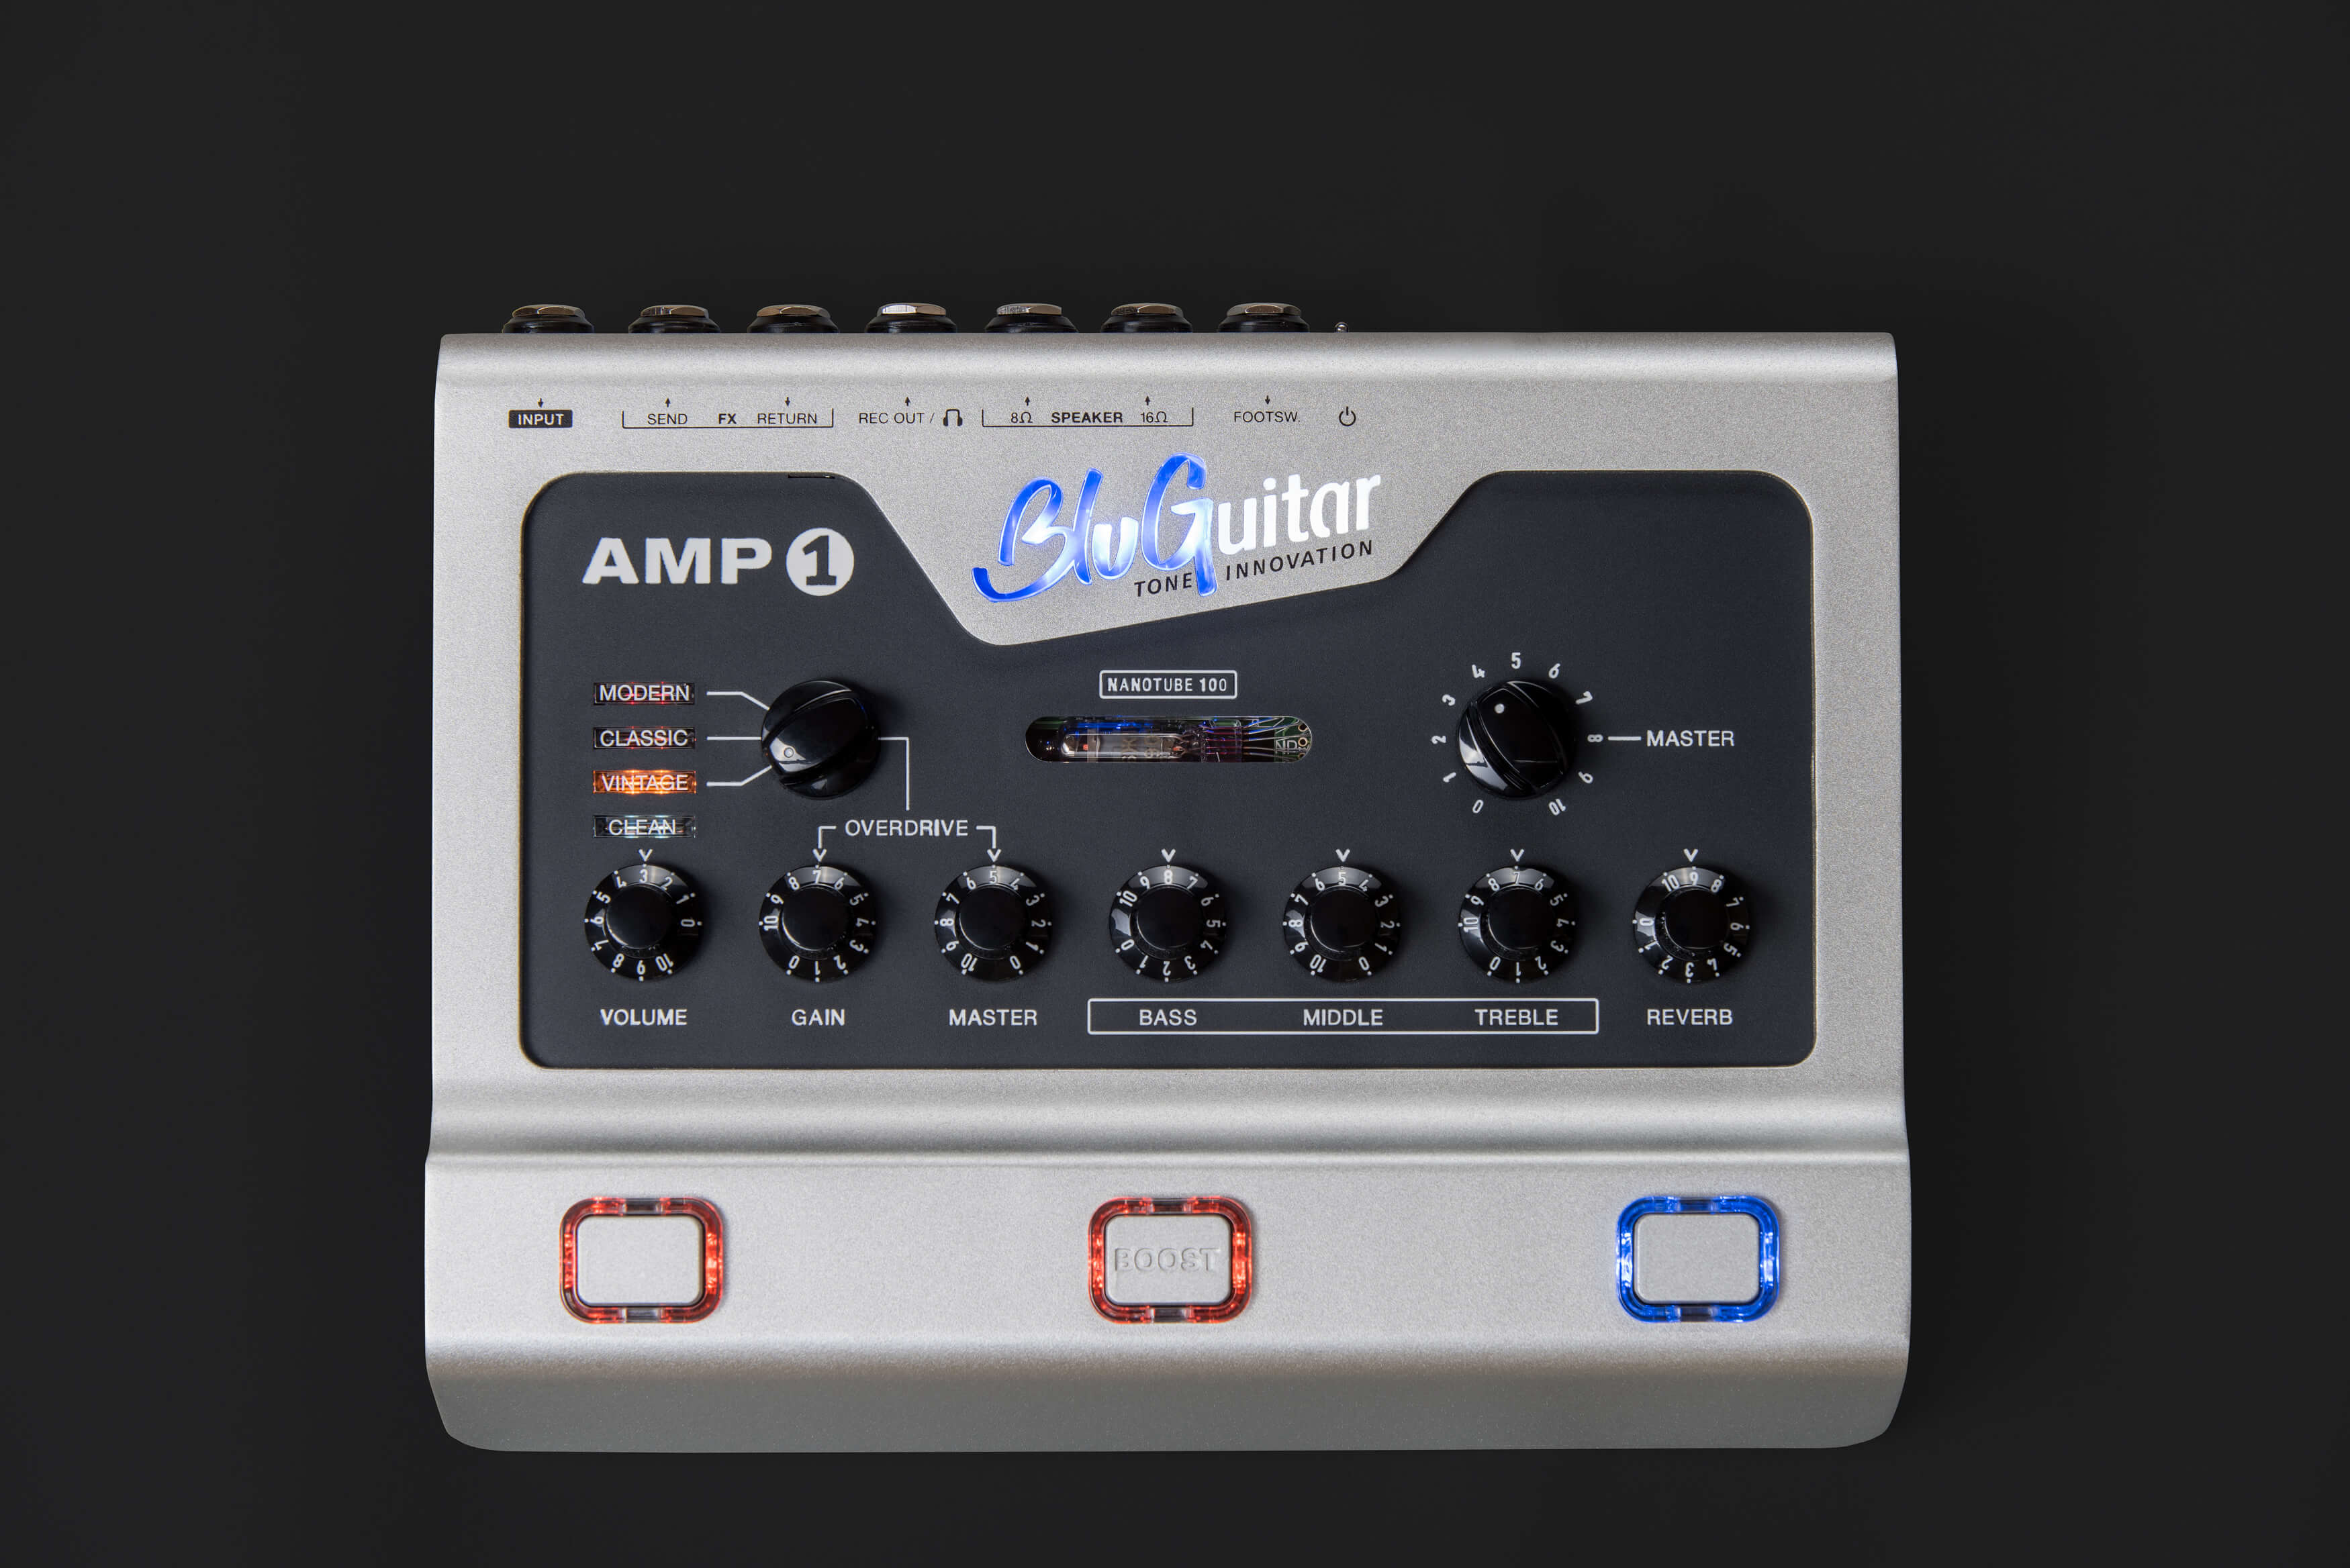 AMP 1